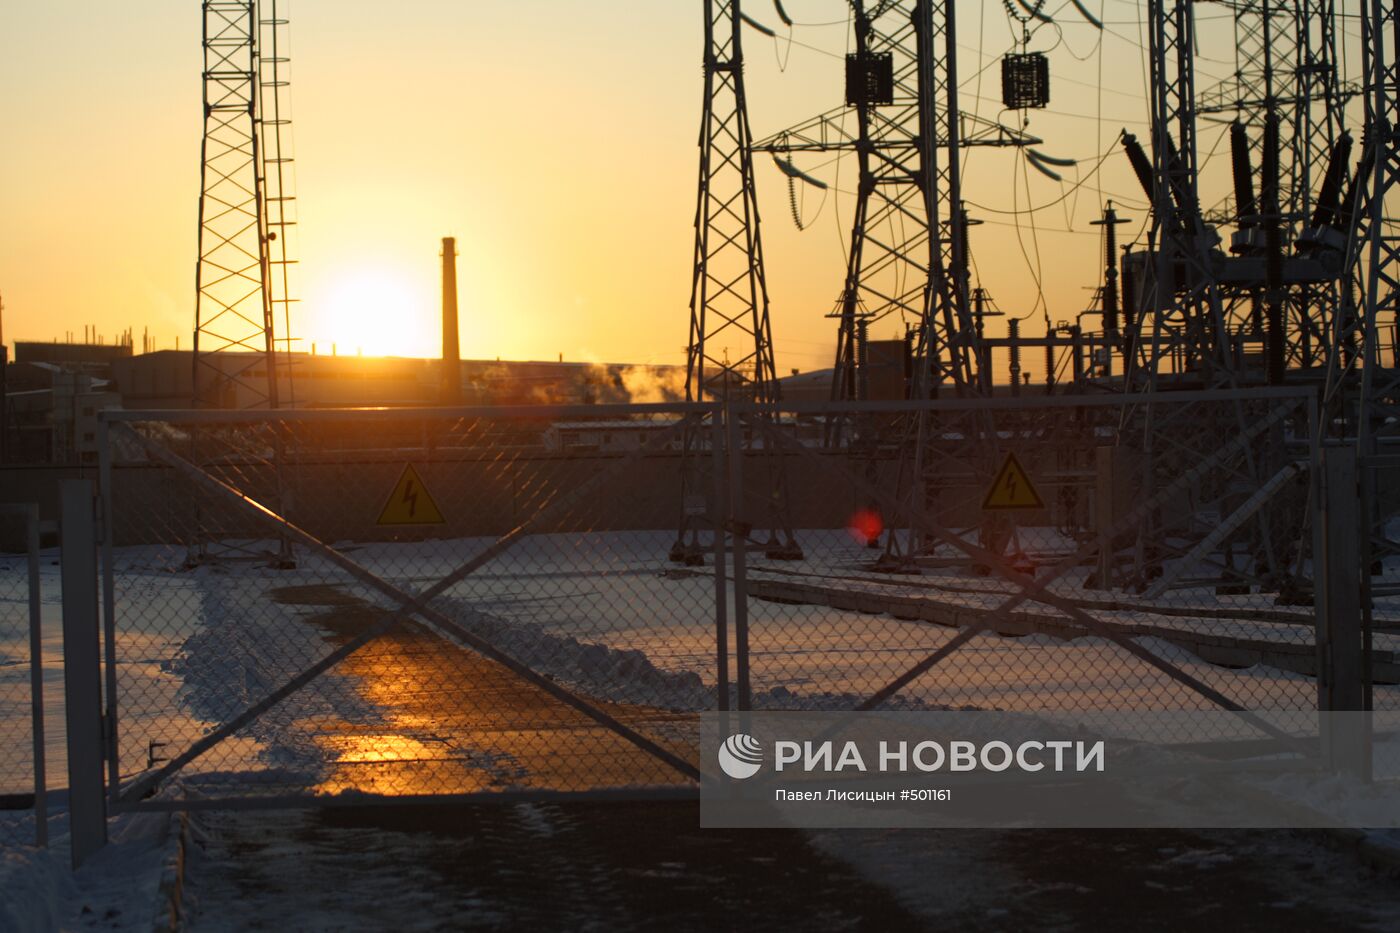 Новая подстанция запущена в эксплуатацию в Свердловской области